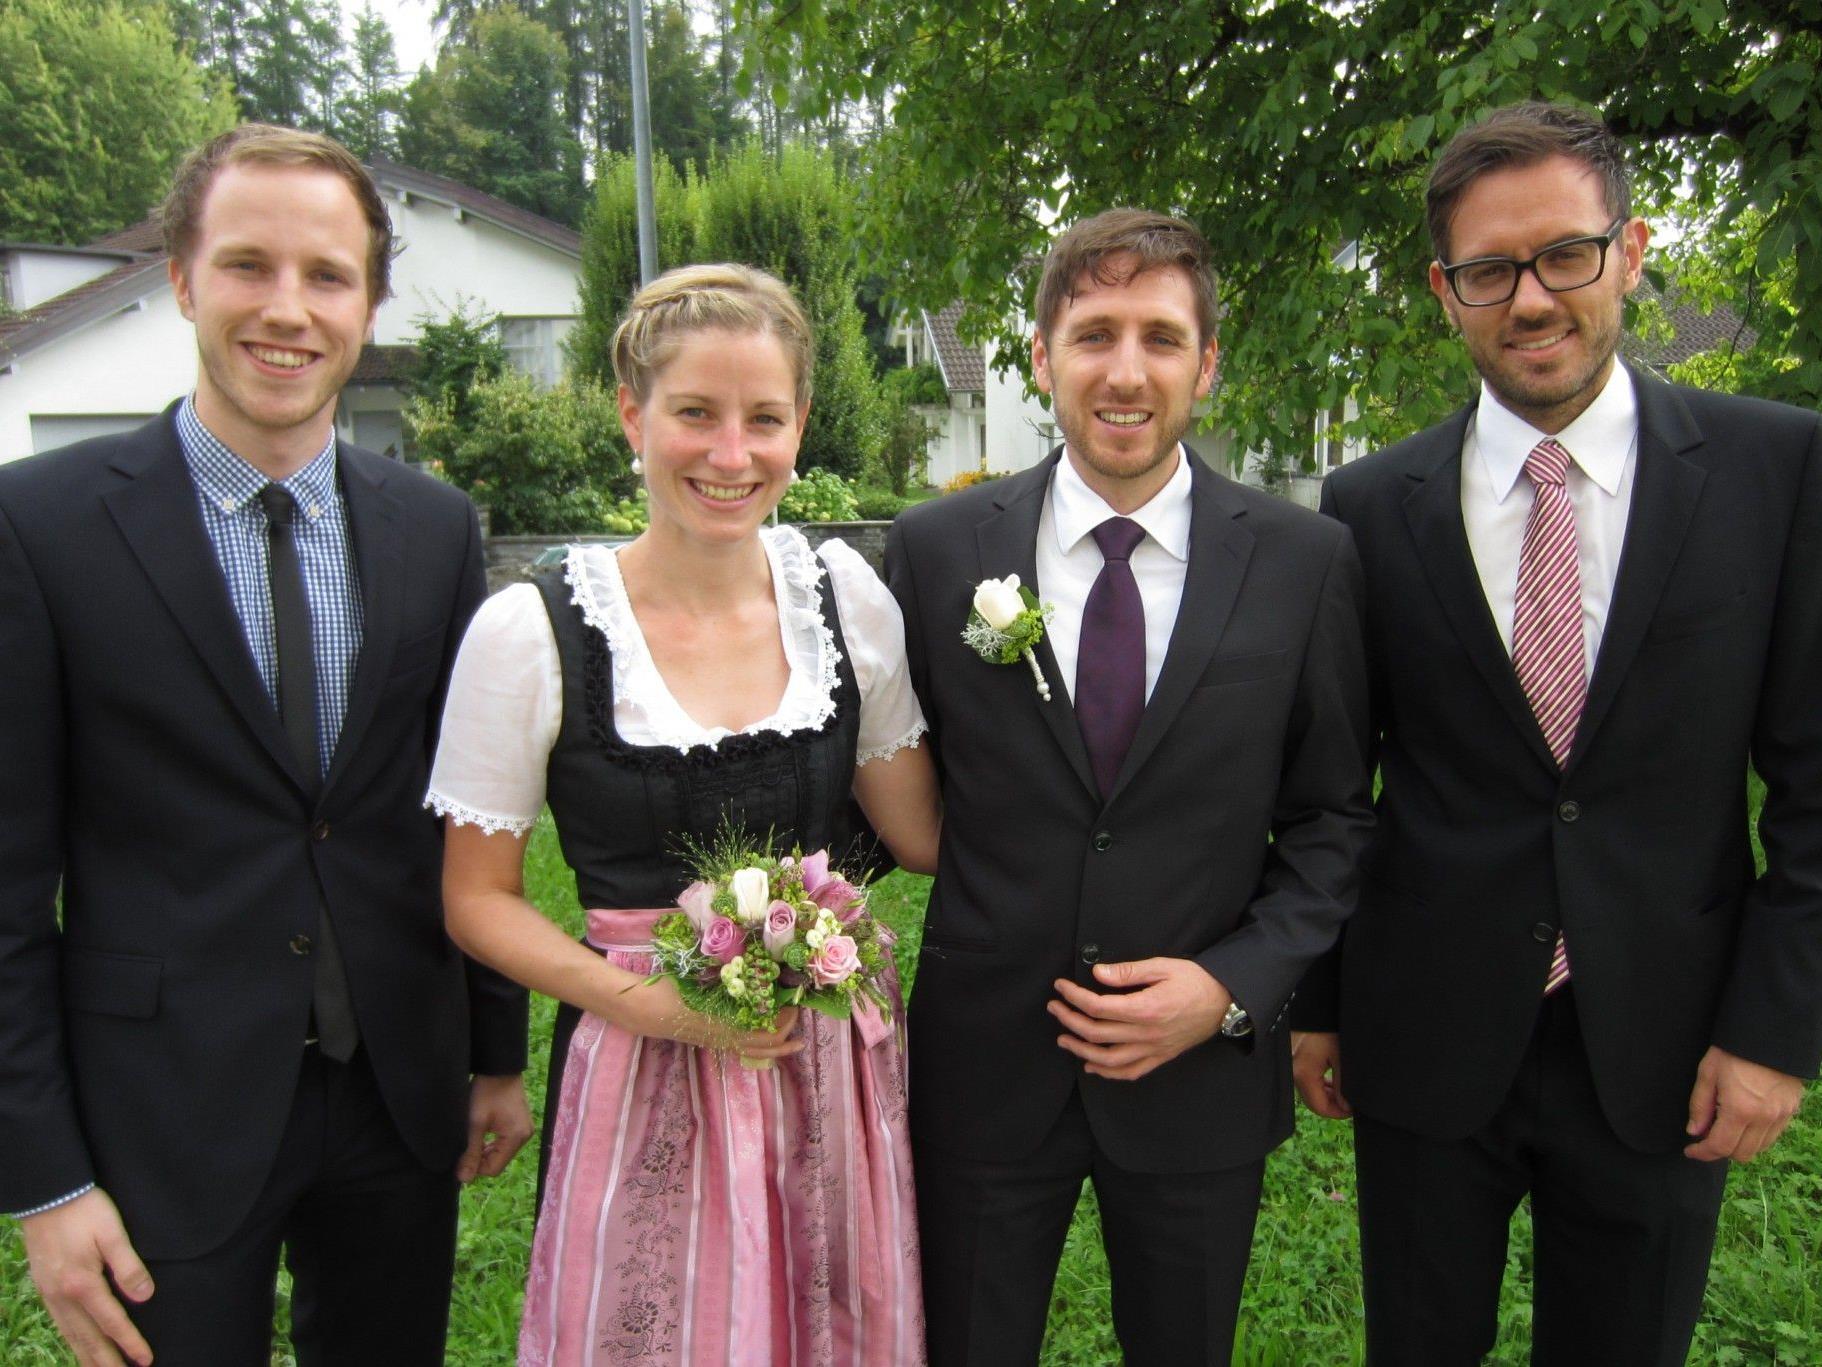 Sabine Winkler und Christian Raich haben geheiratet.